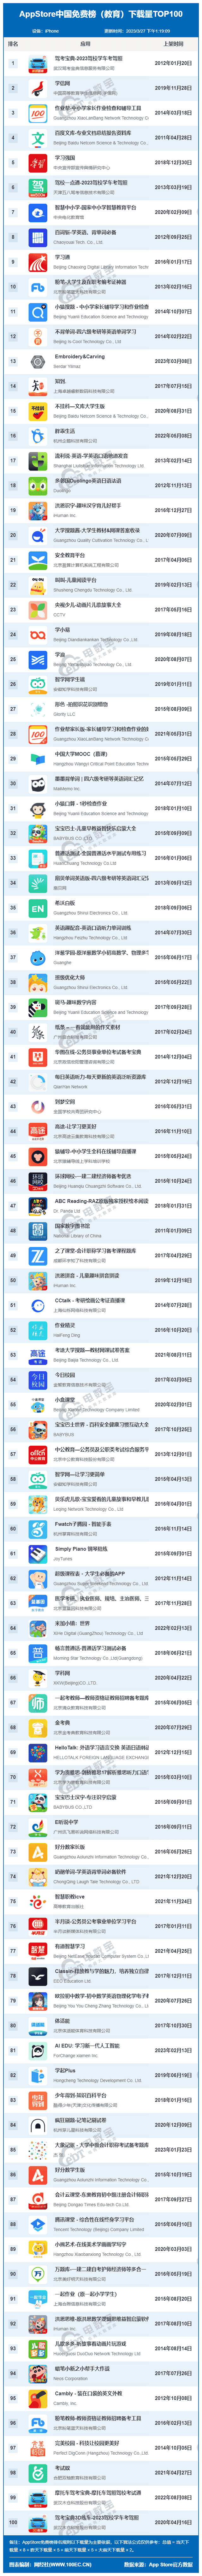 3月AppStore中国免费榜(教育)TOP100：作业帮 百词斩 粉笔等前十